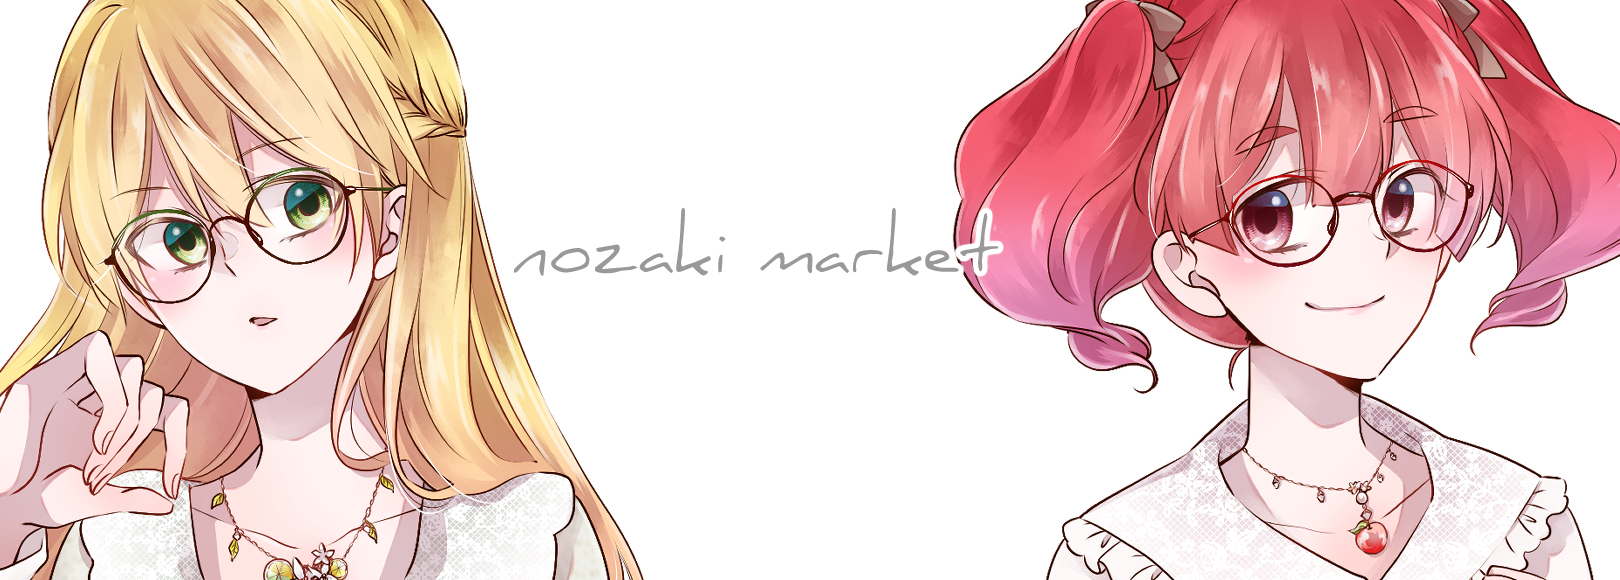 ノザキマーケット